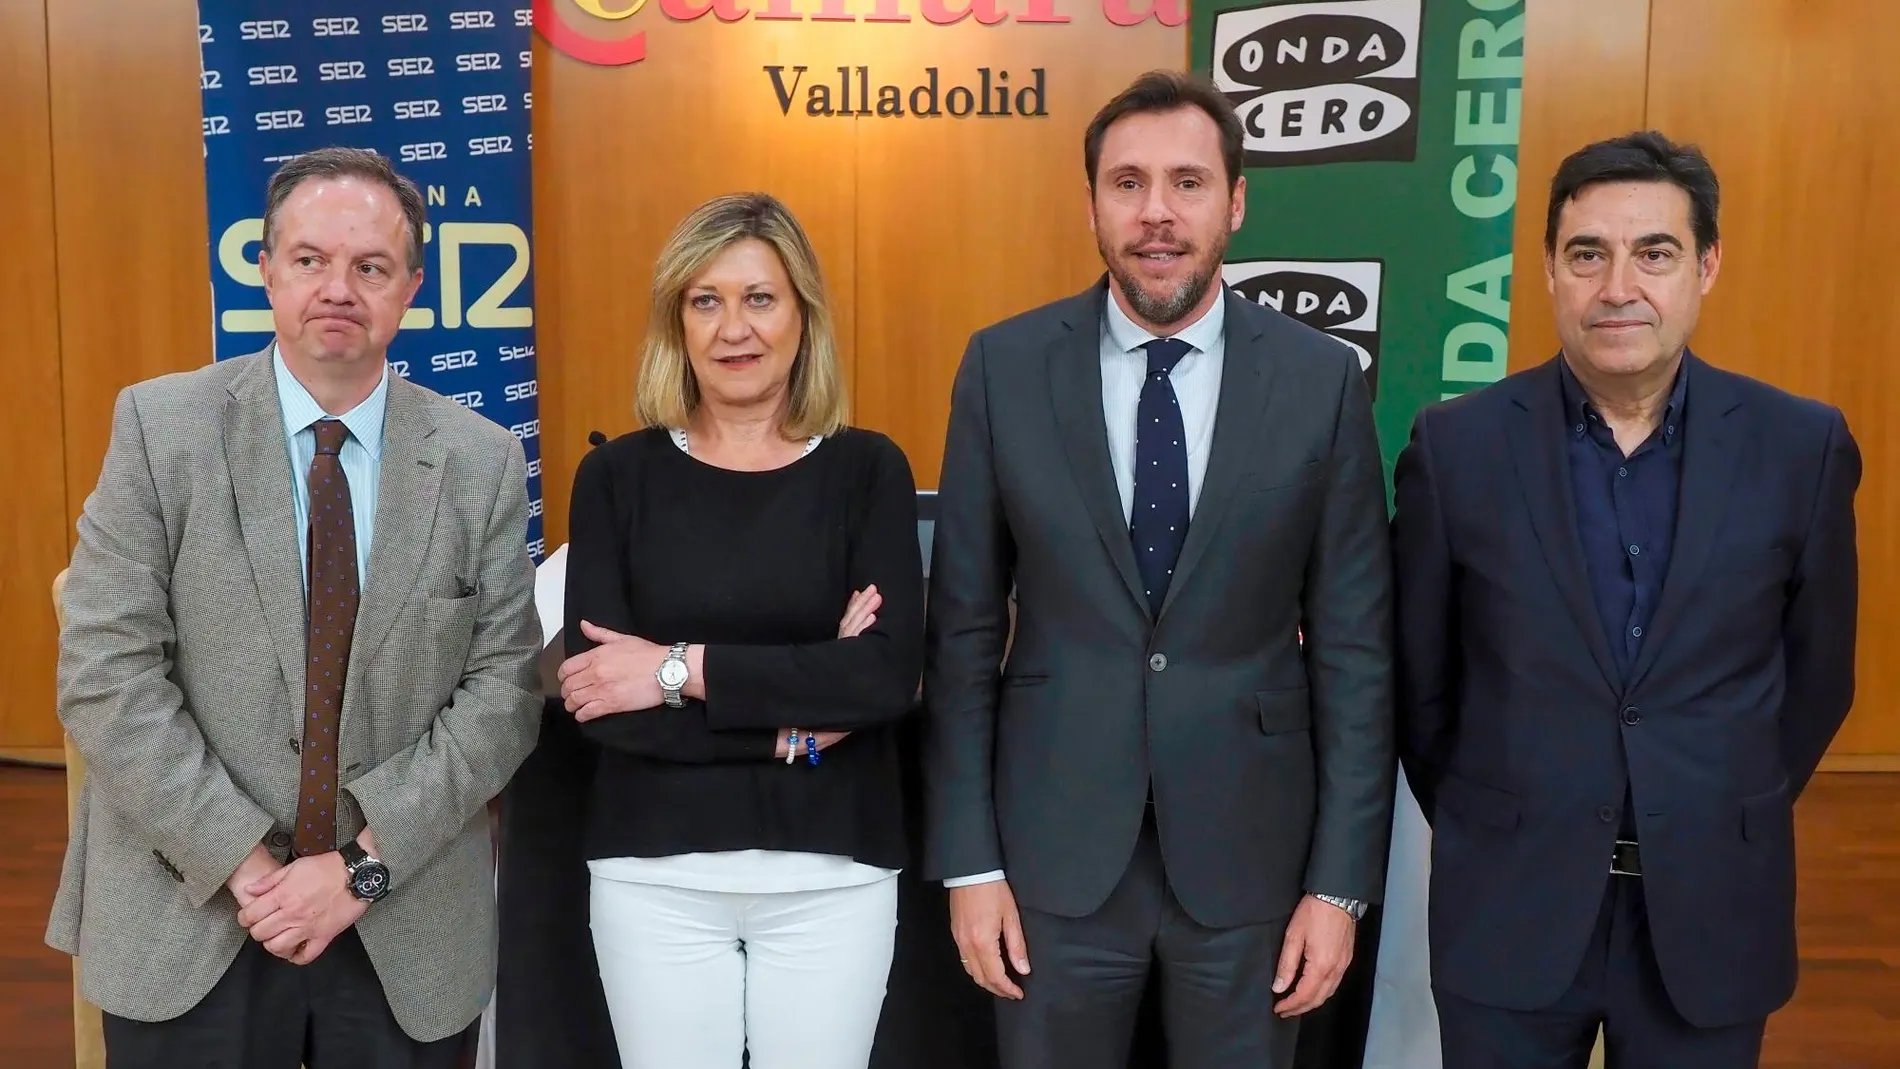 Los candidatos del PP y PSOE, Pilar del Olmo y Óscar Puente, junto a los periodistas Ignacio Sobrino y Jesús Mateos